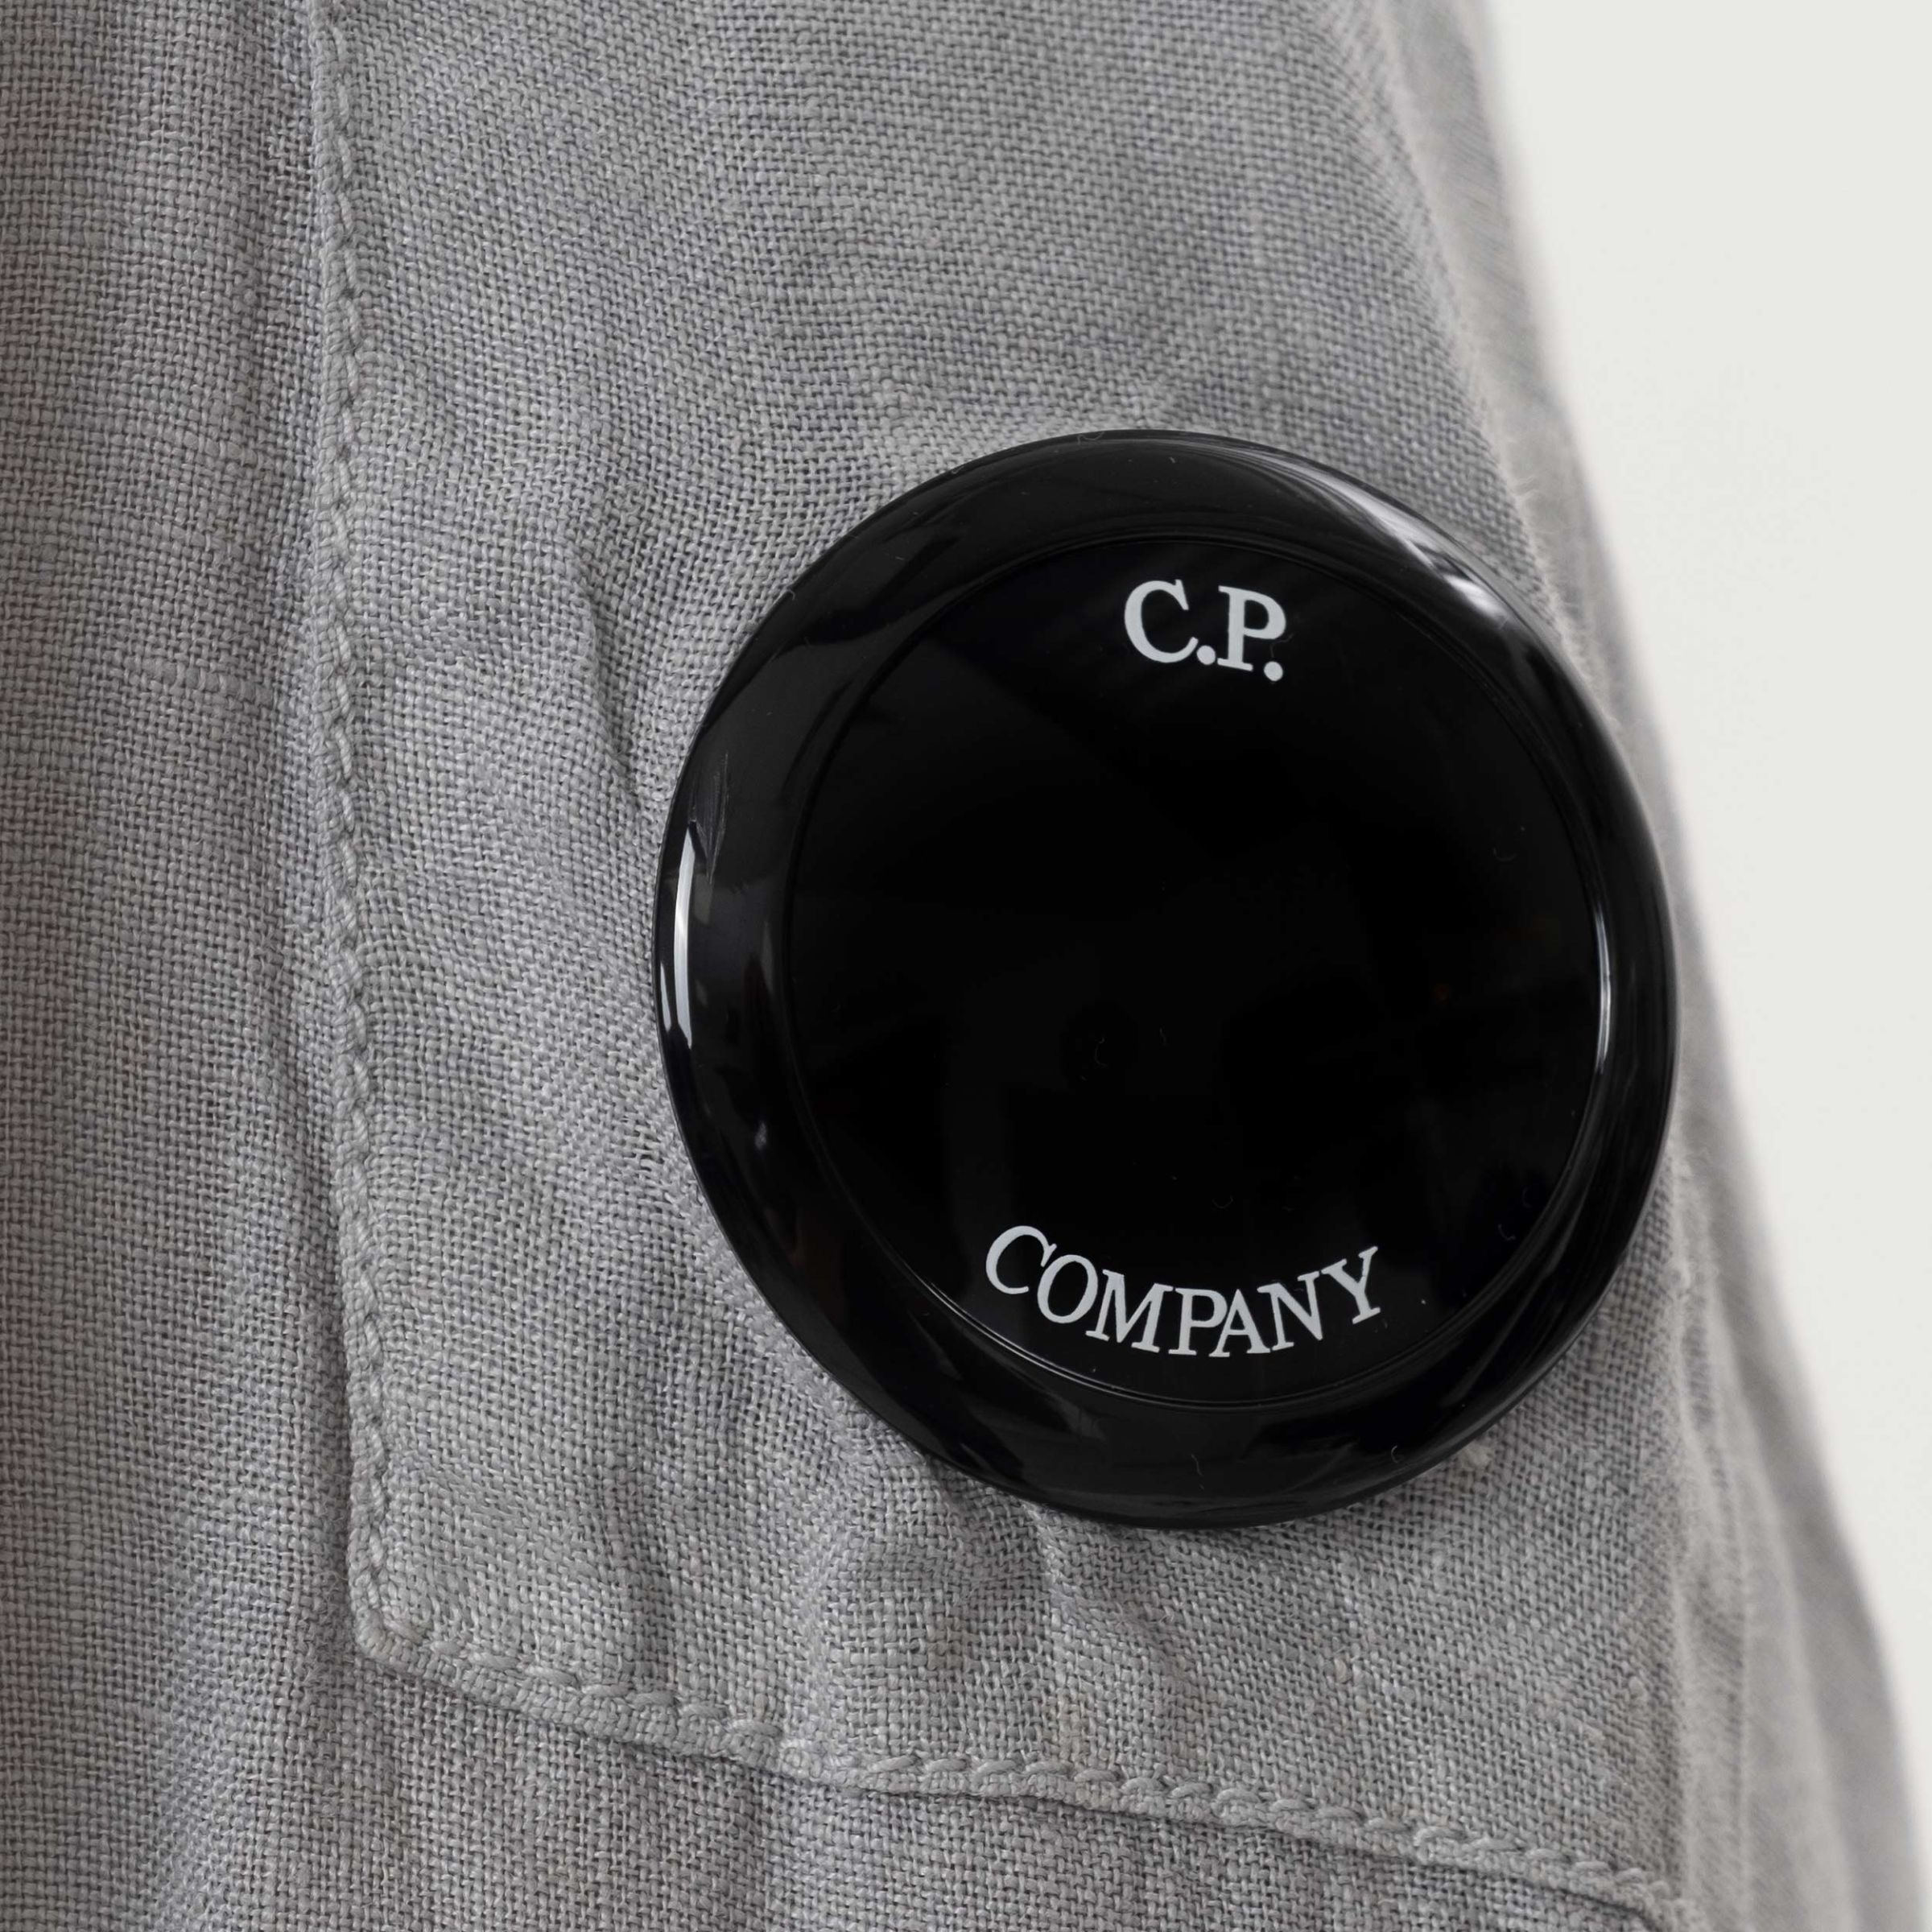 Сорочка C.P. Company сіра